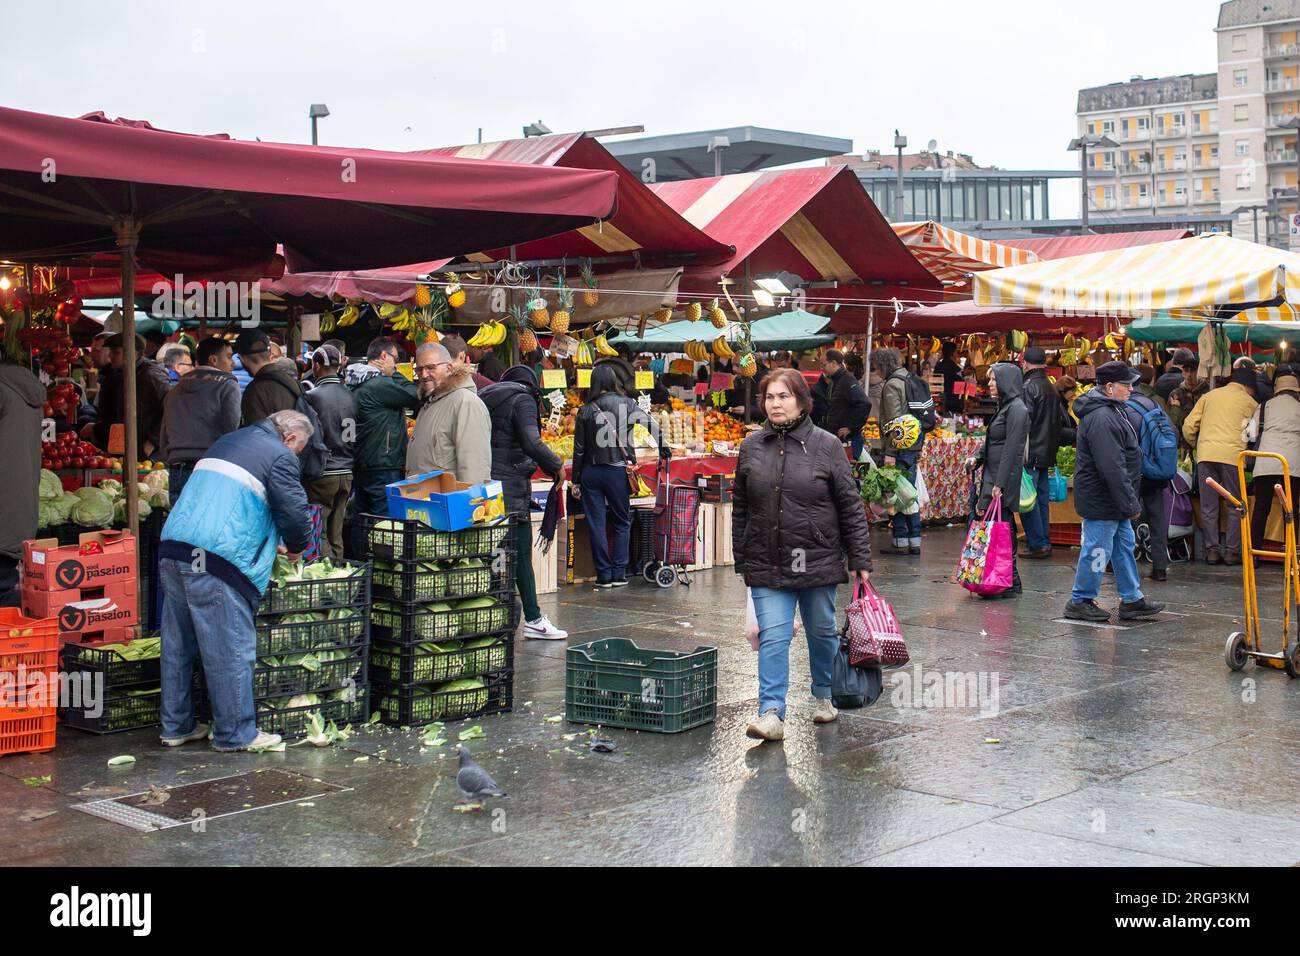 TURIN, ITALIEN - 10. NOVEMBER 2018: Menschen auf dem lokalen traditionellen Markt im Porta Palazzo in Turin, Italien. Stockfoto